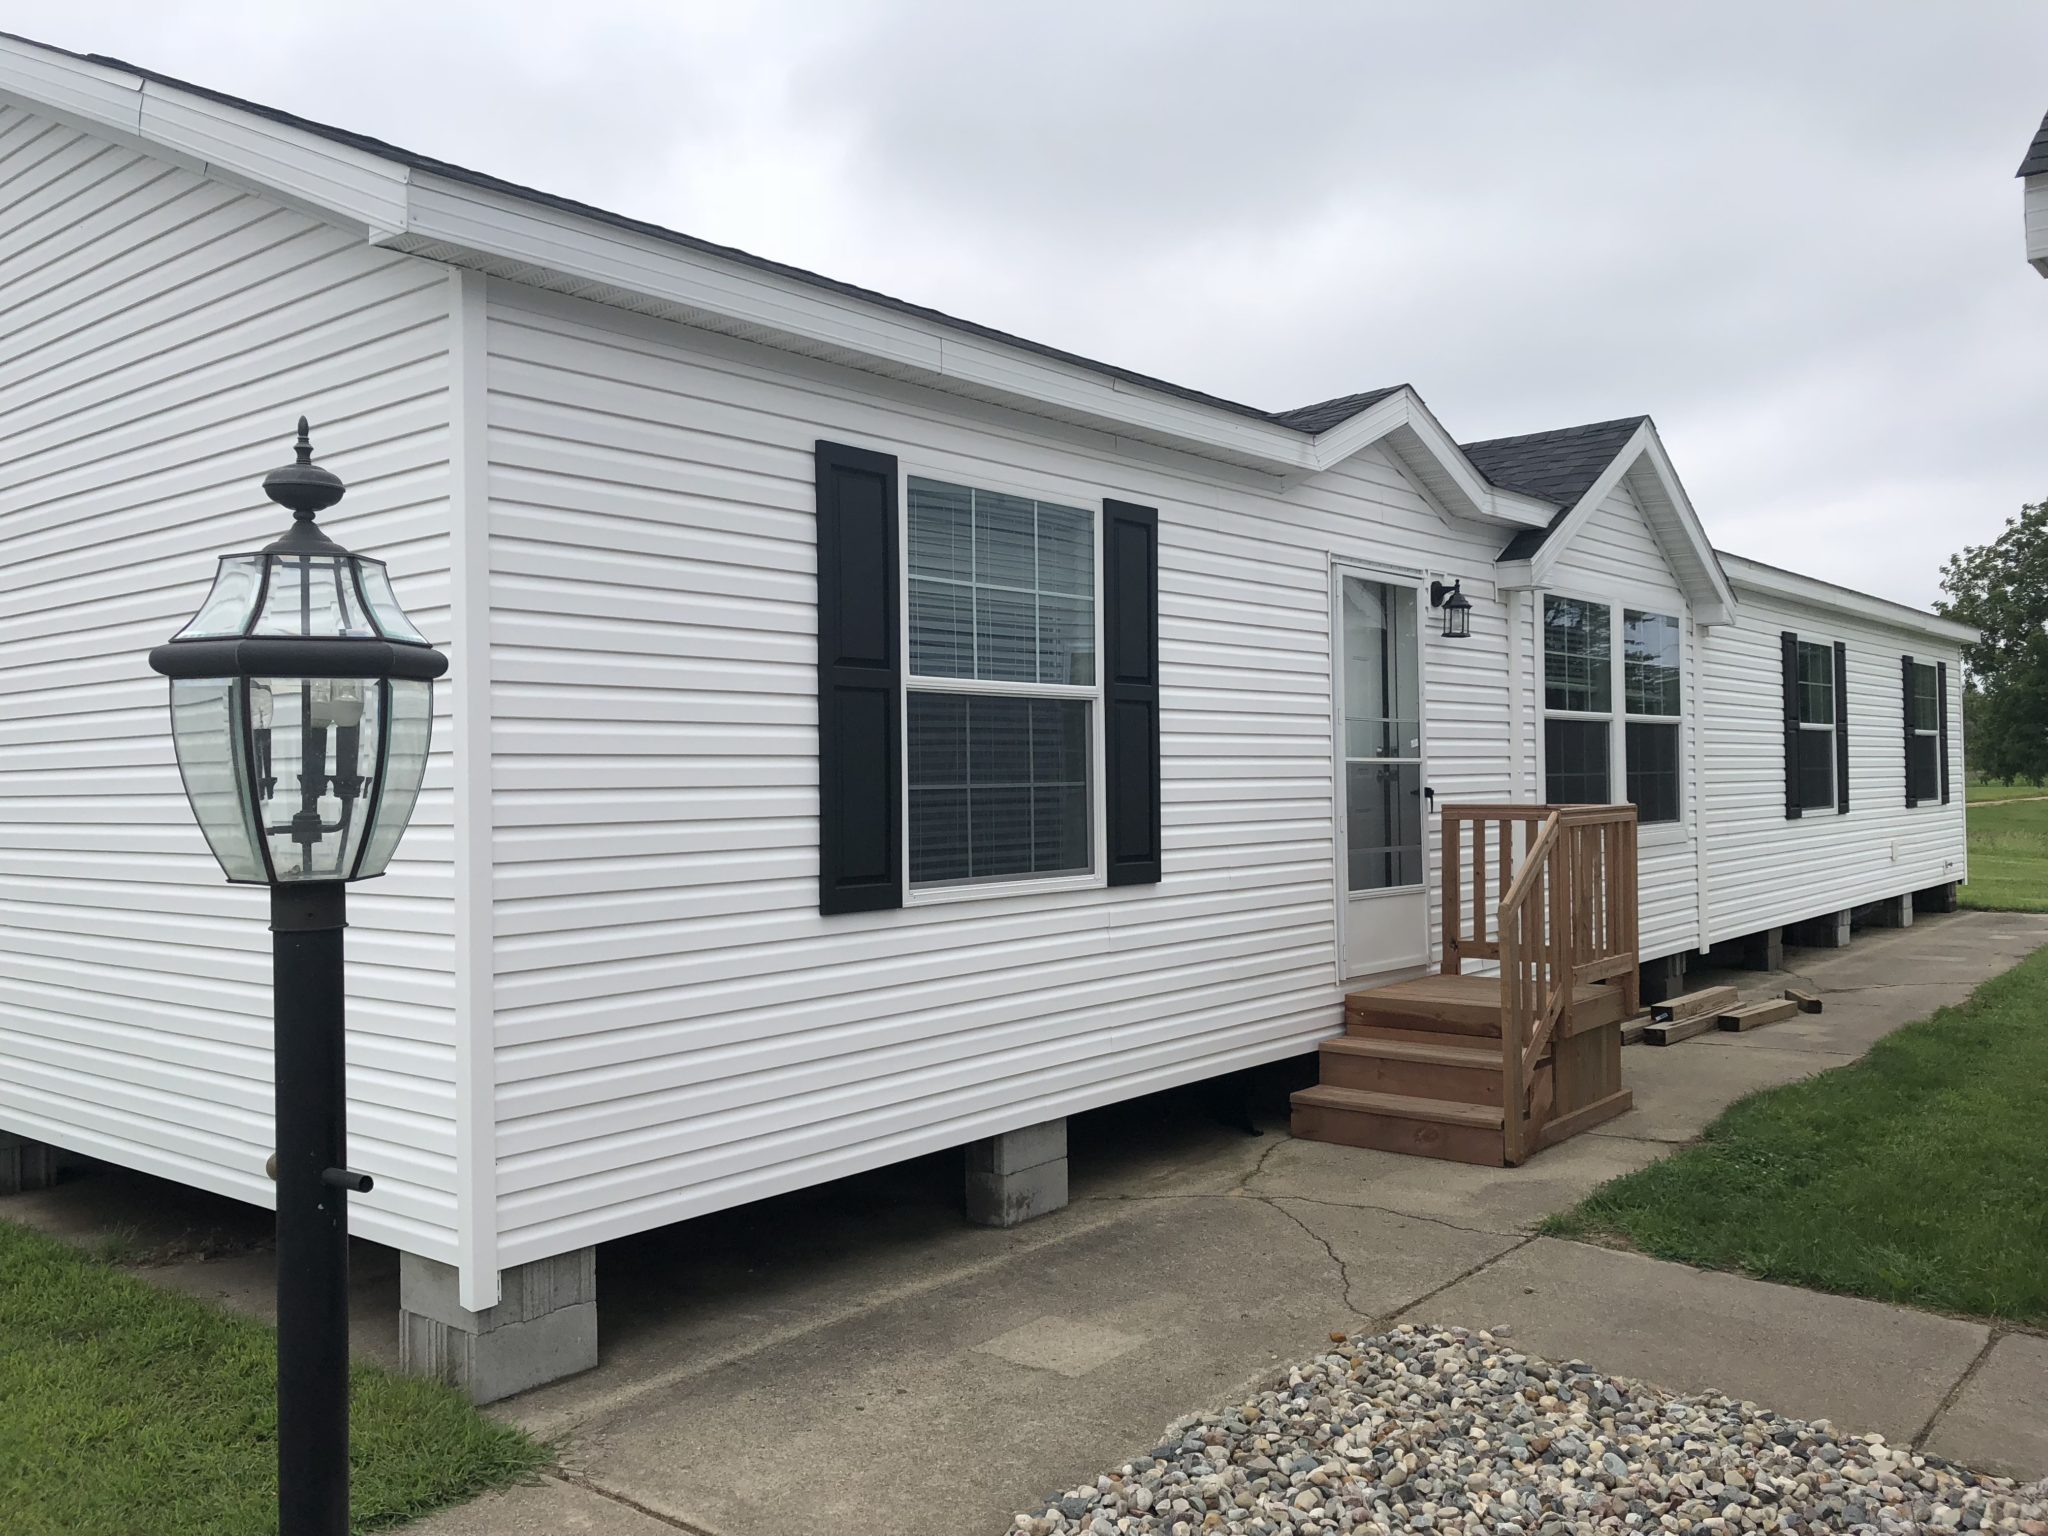 The Stafford custom modular home exterior